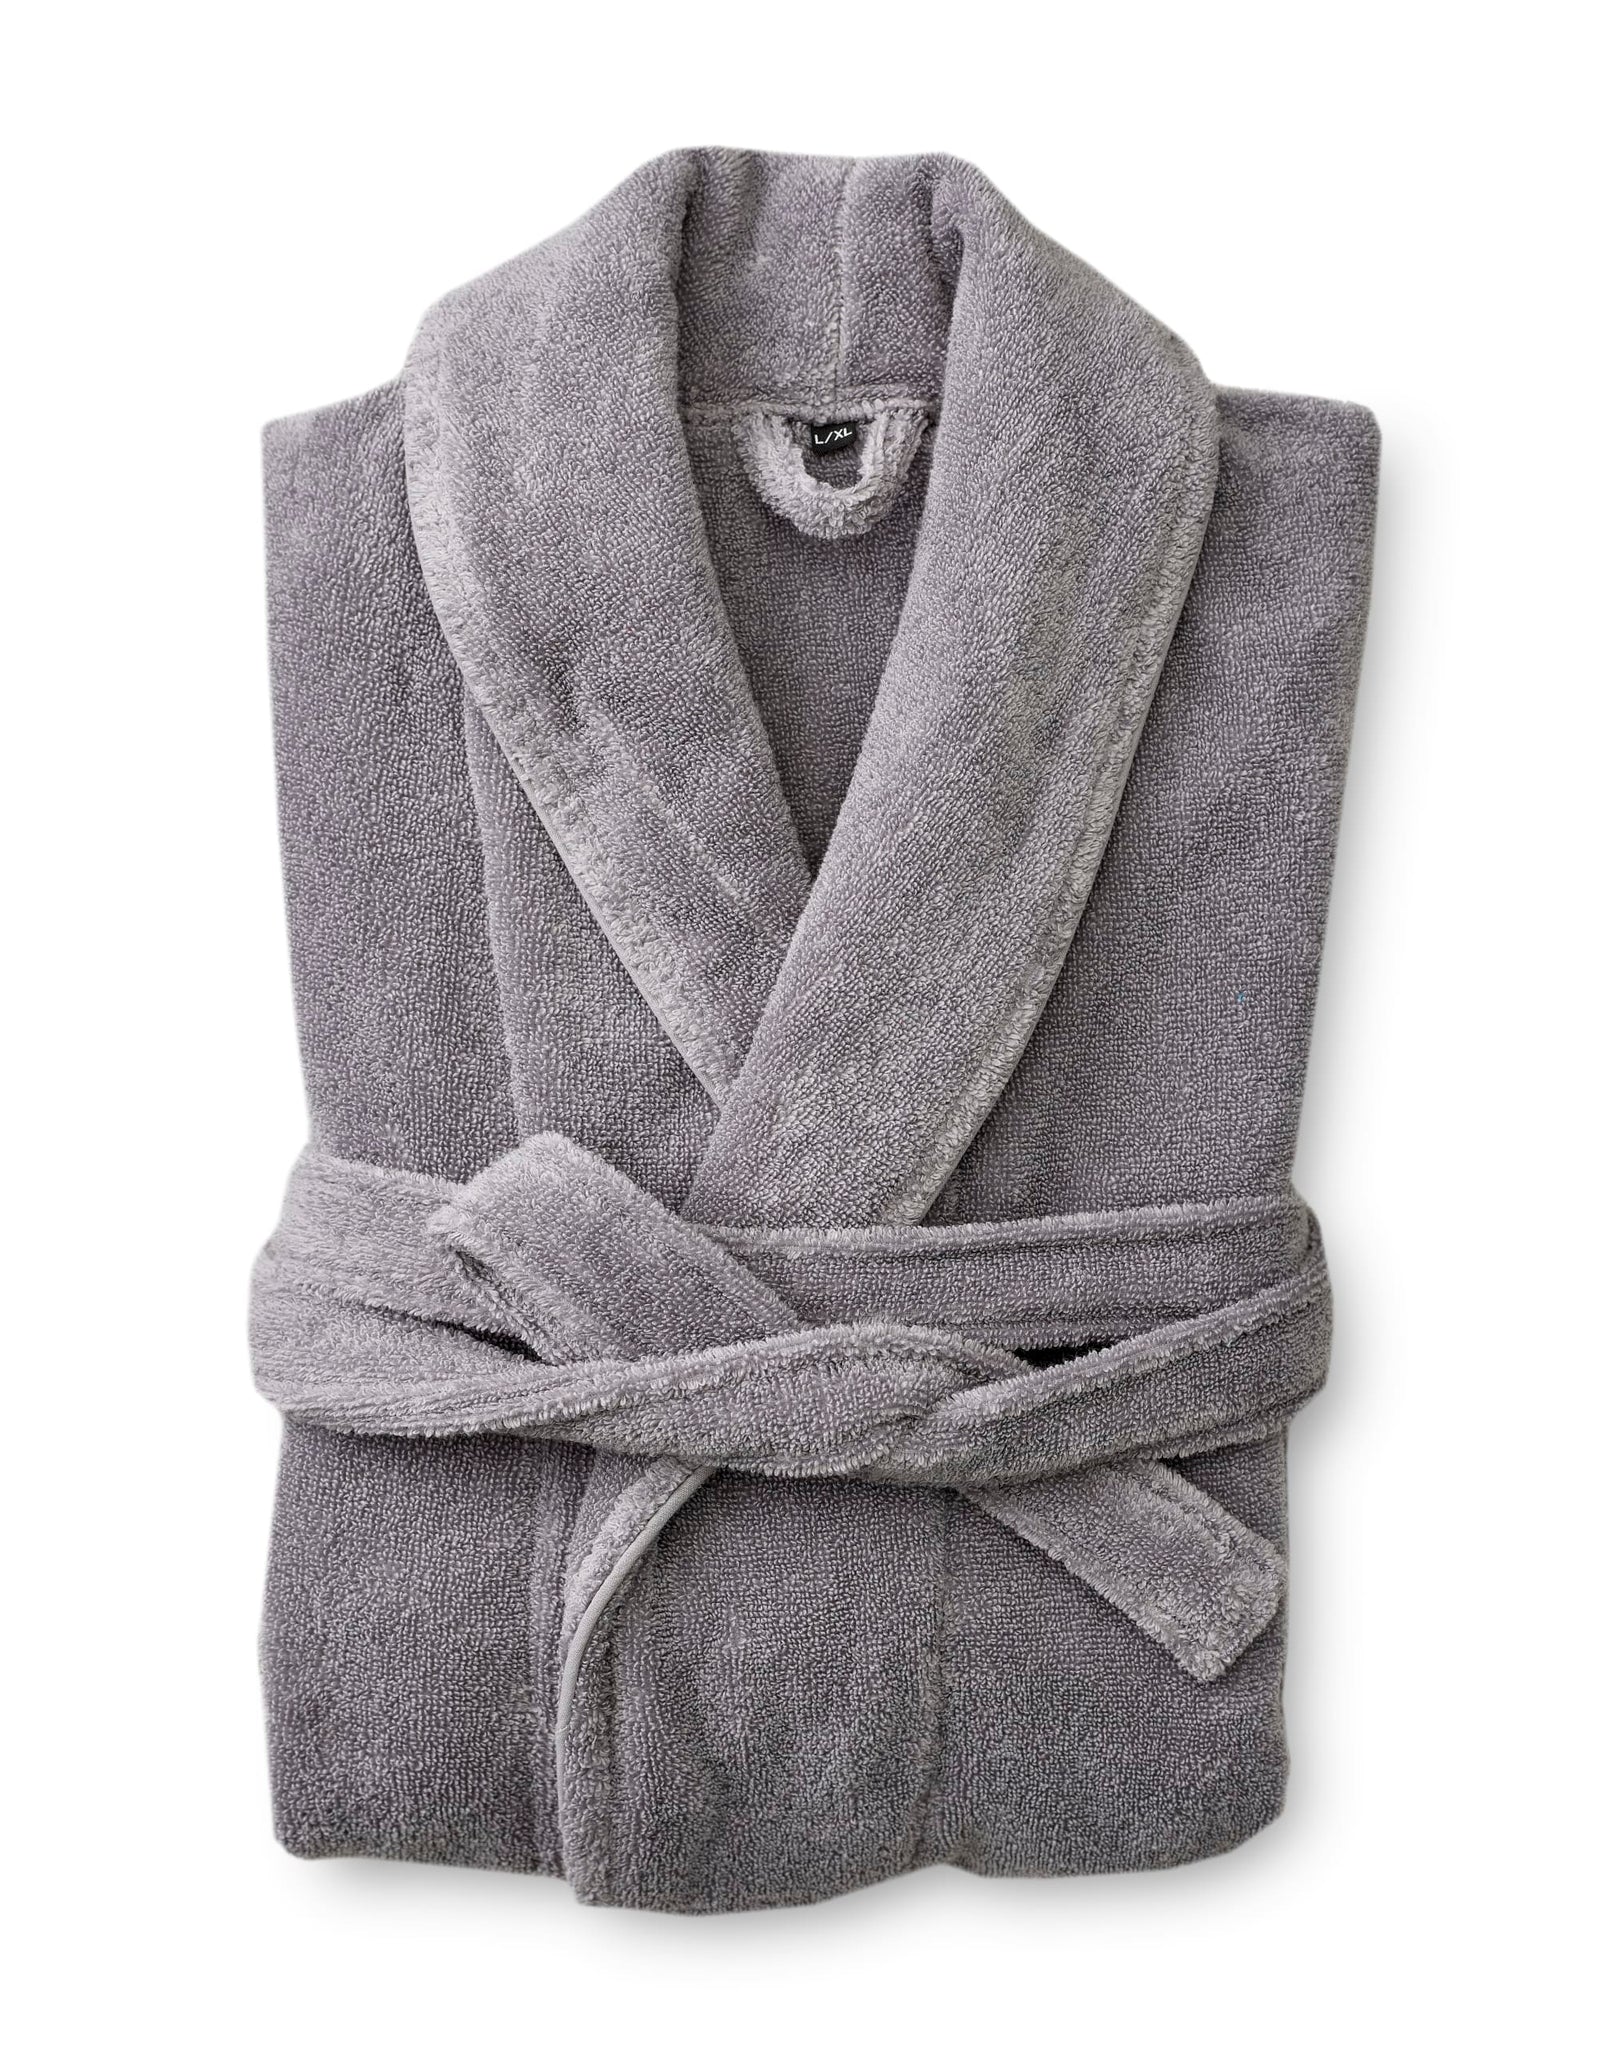 Hali bathrobe